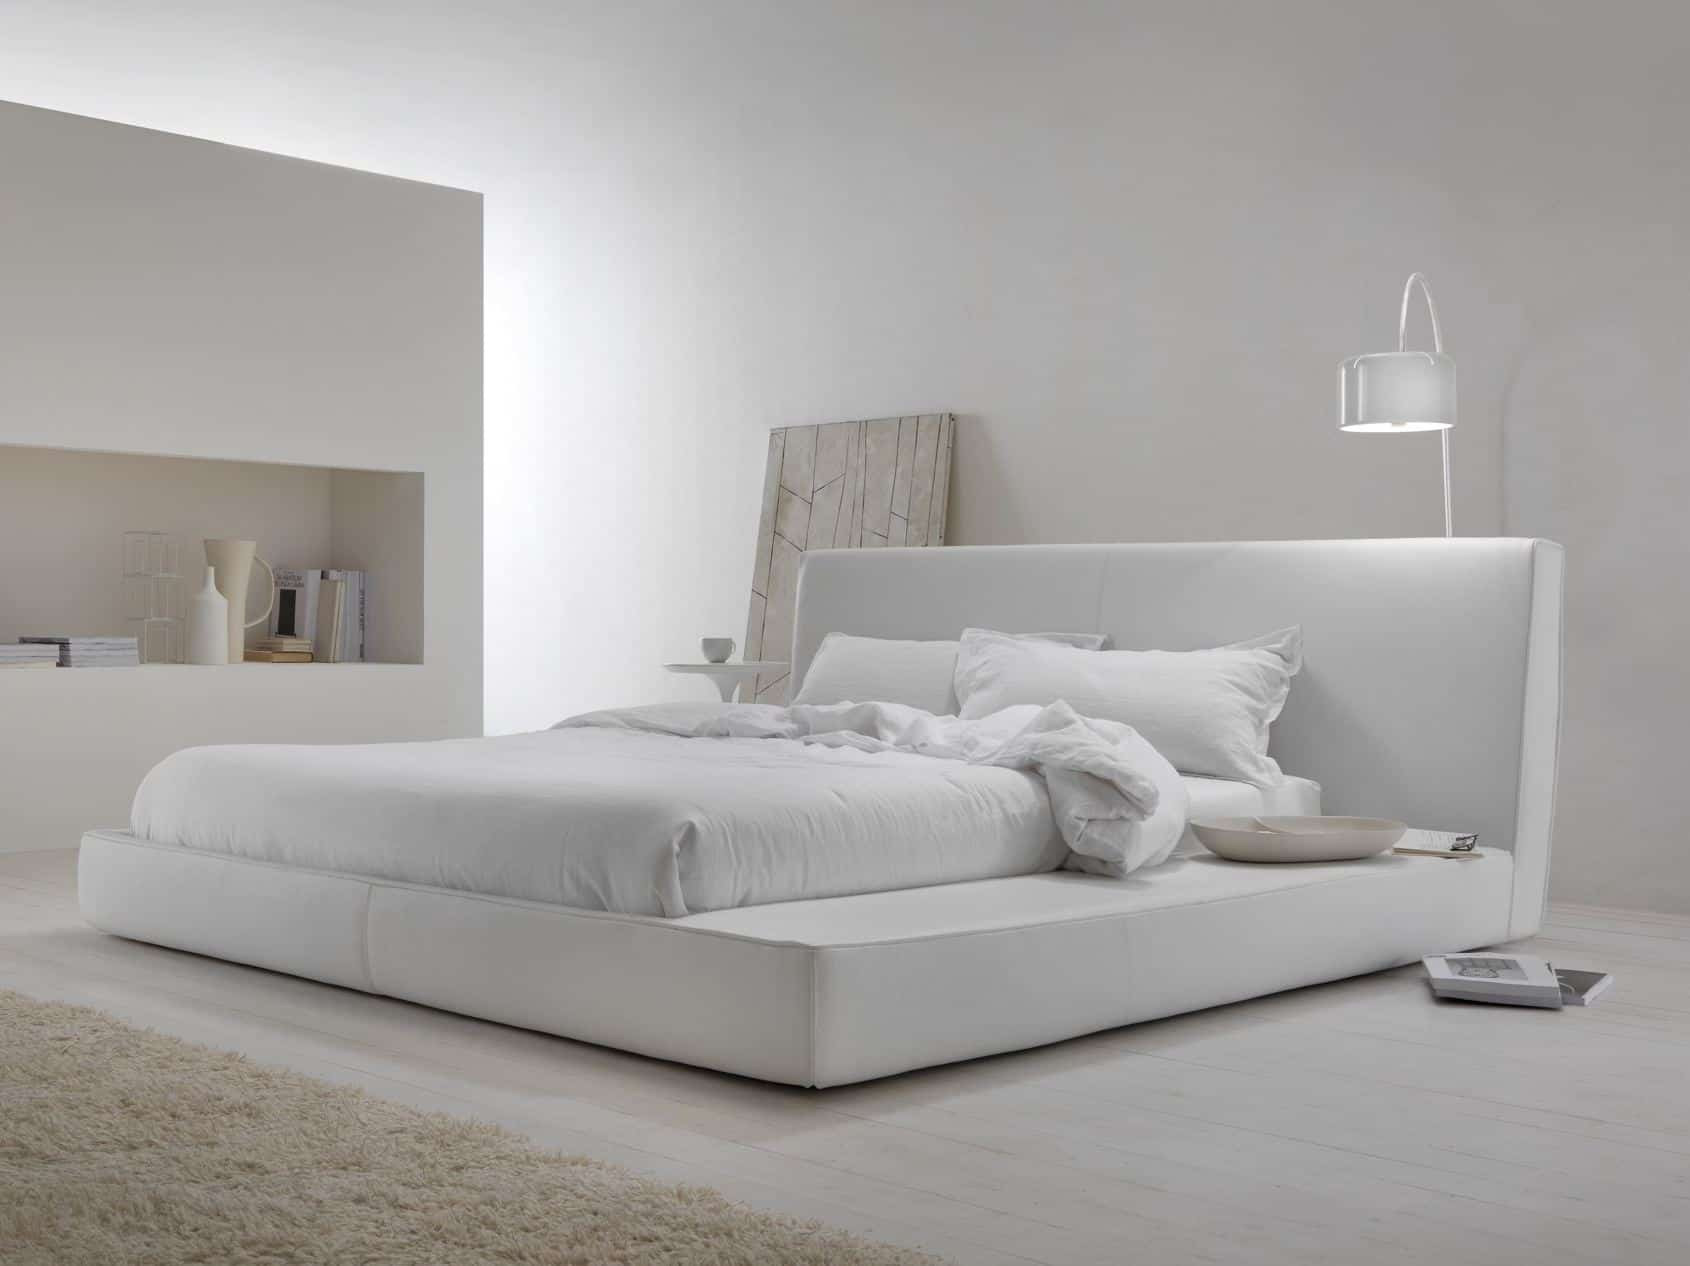 Modern White Bedroom
 50 Modern Bedroom Design Ideas